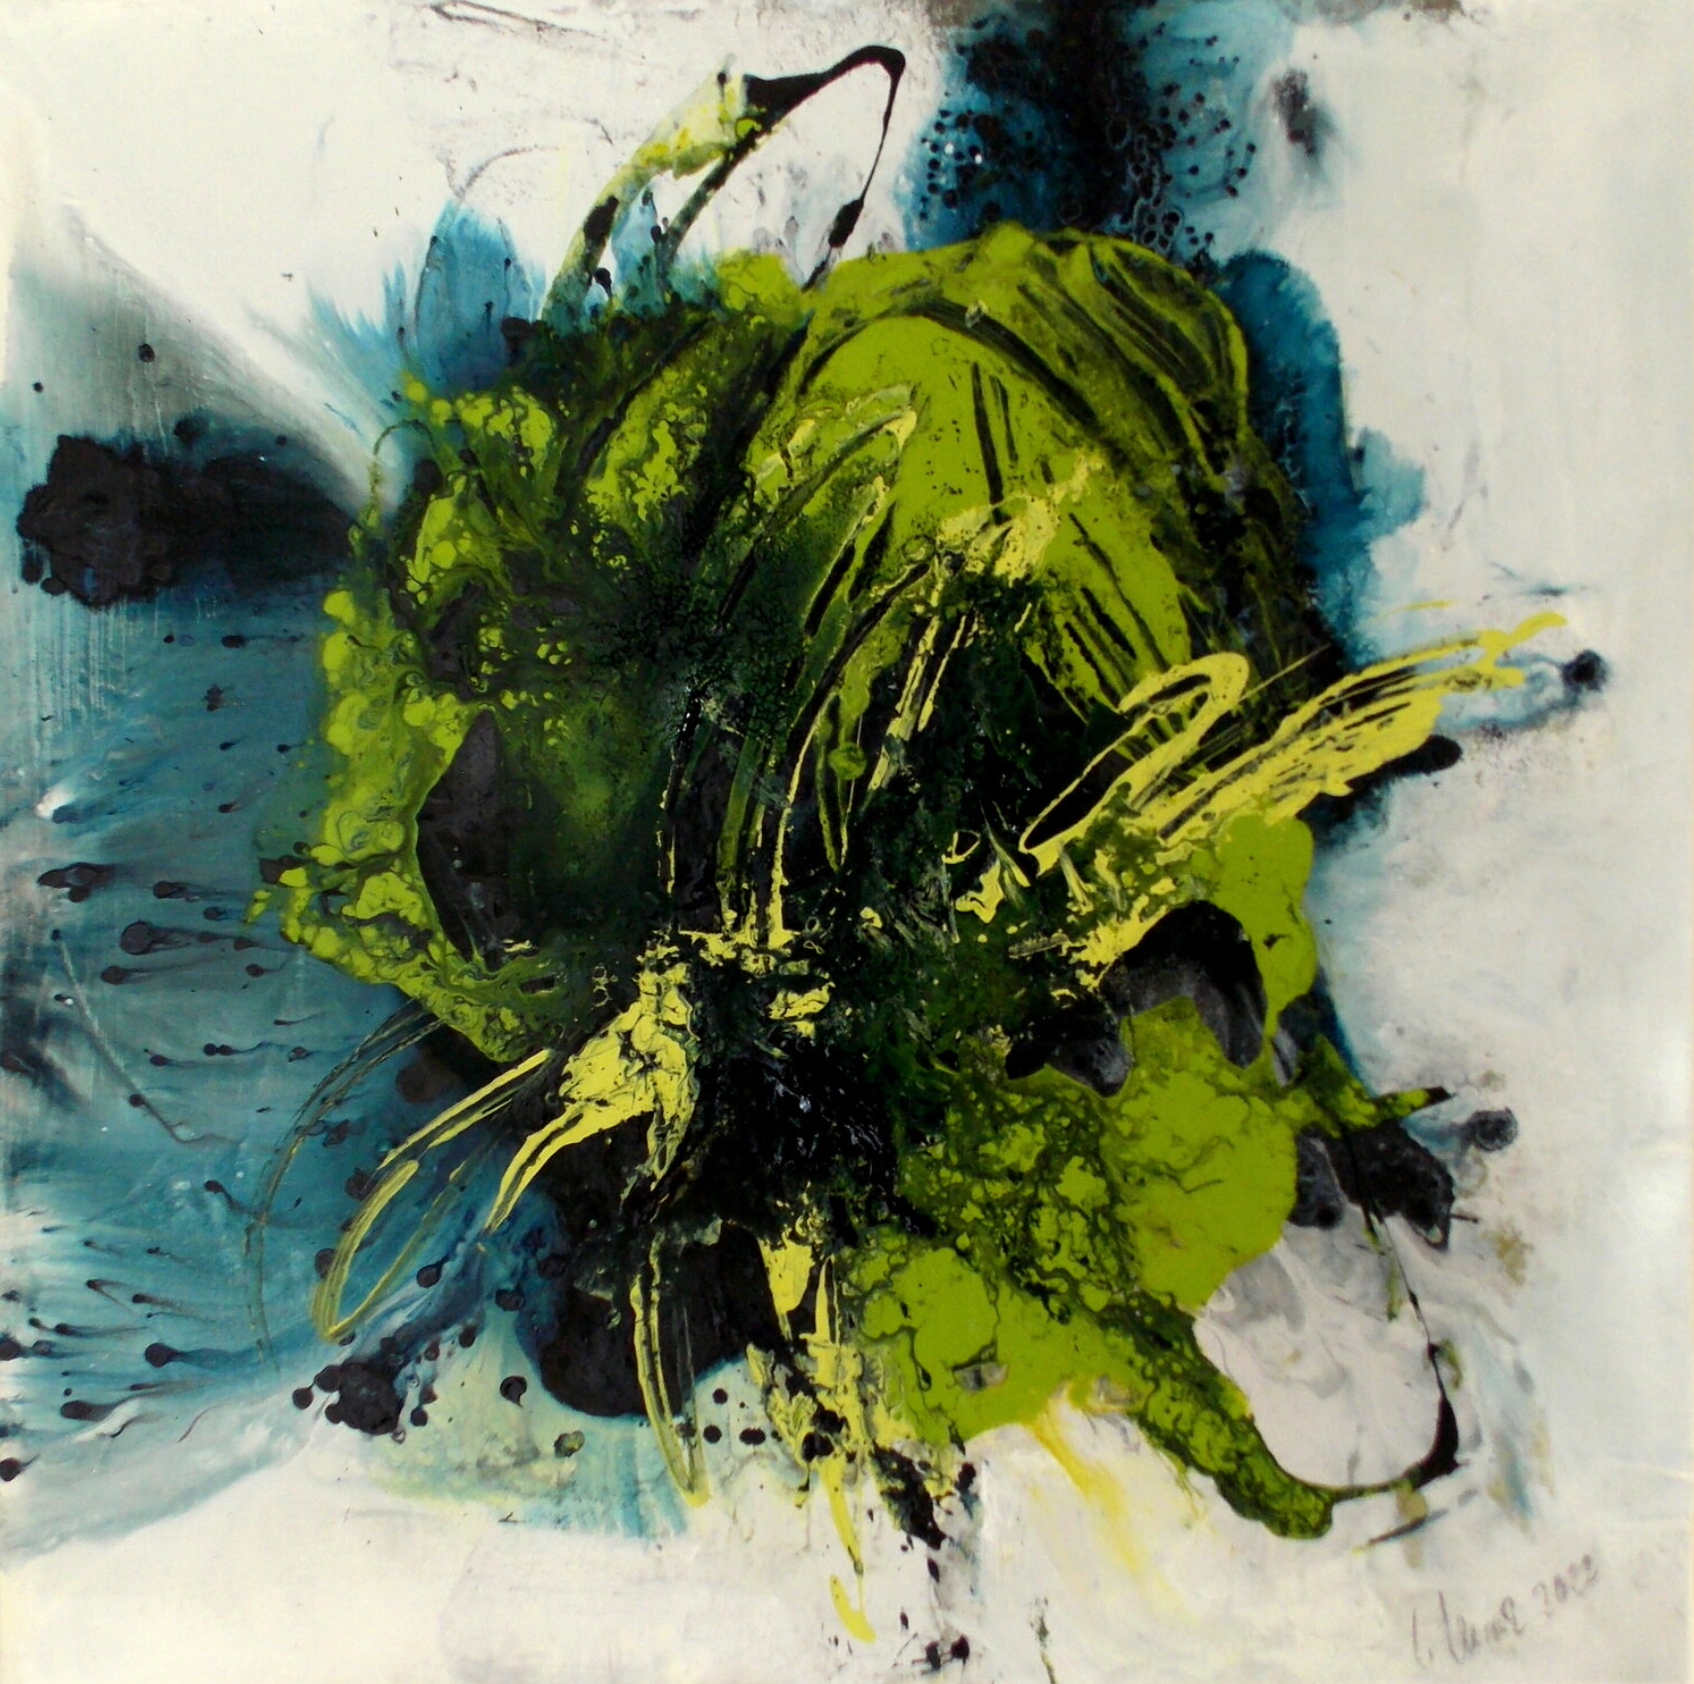 在克里斯塔-哈克的 "清除3 "表现主义的、抽象的、彩色的绘画中，黄色、绿色和蓝色占主导地位。